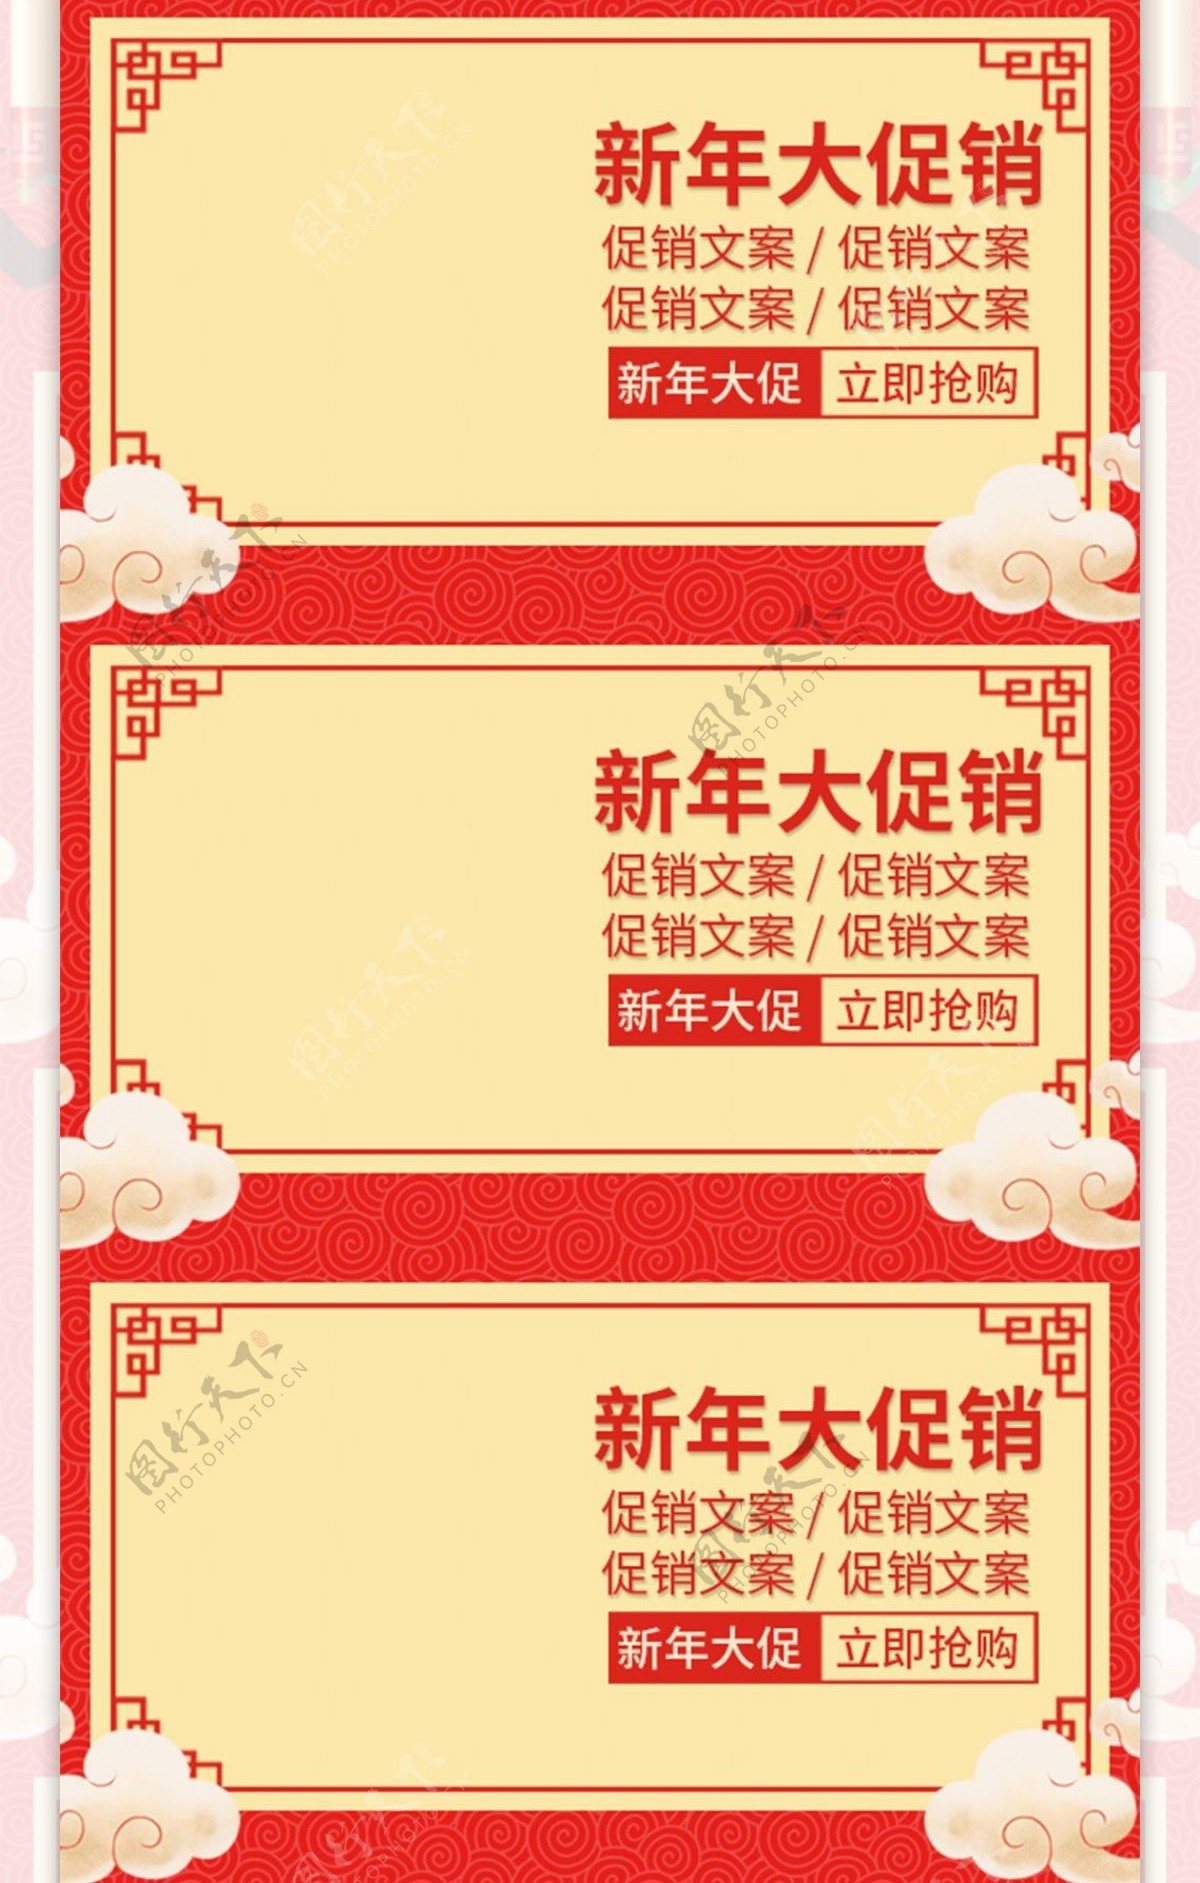 中国红2018新年春节优惠大促销手机首页